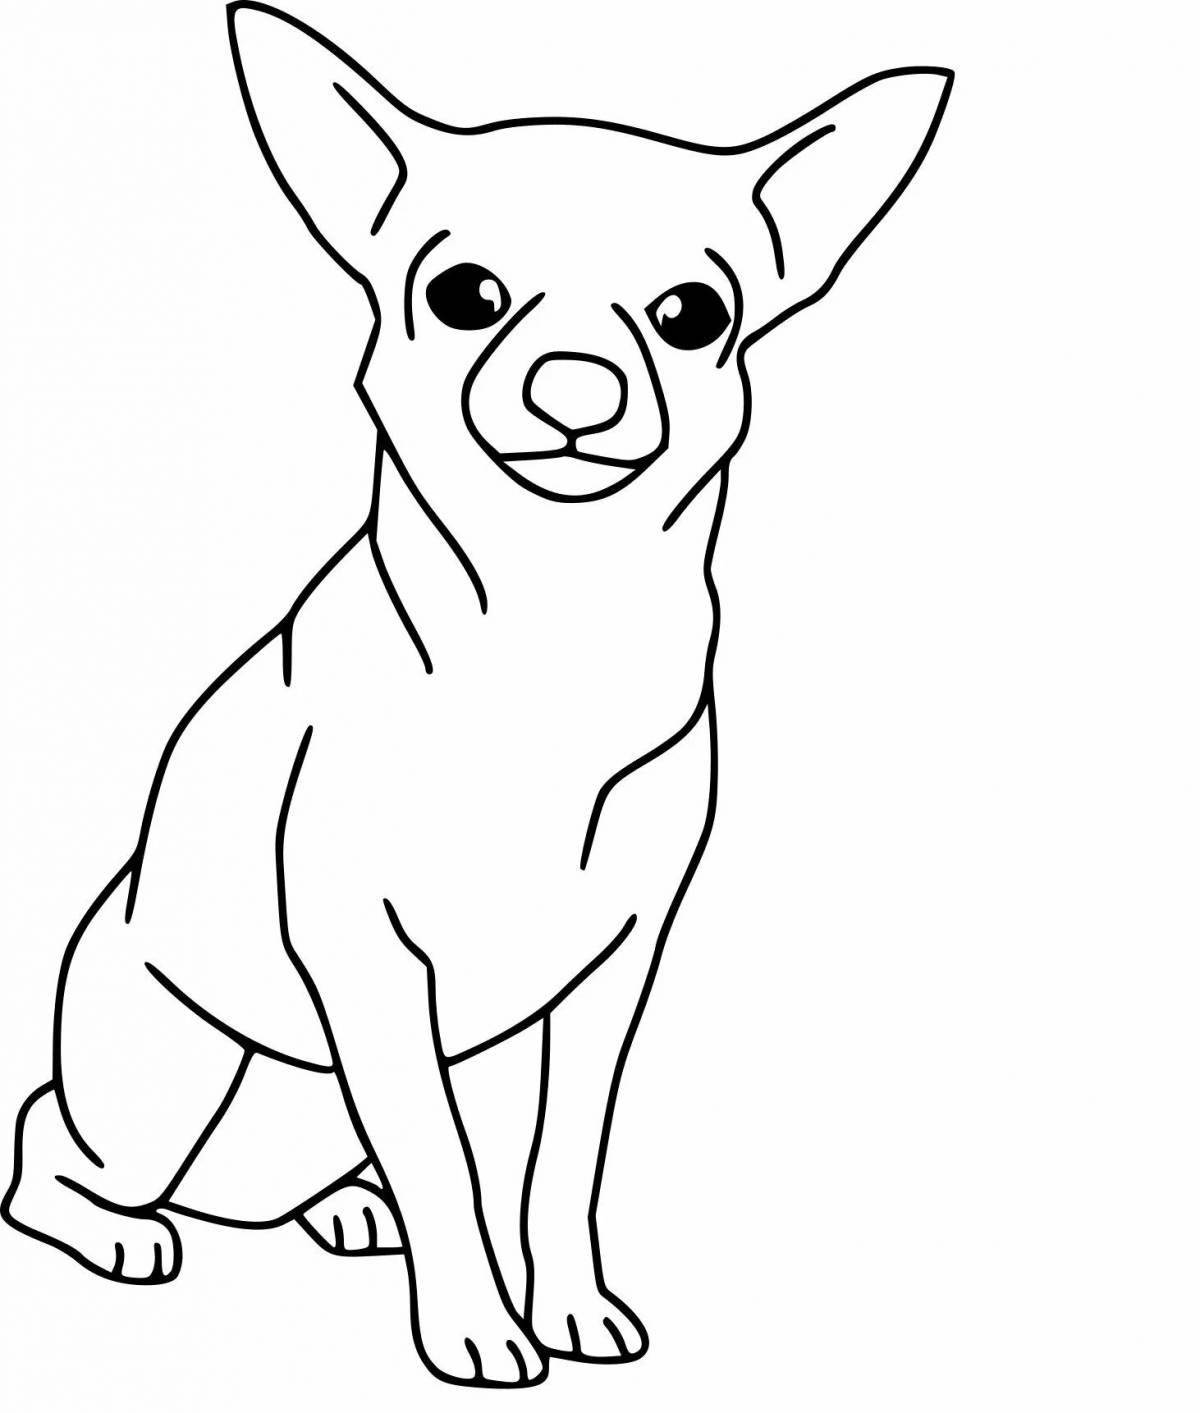 Яркая раскраска рисунок собаки